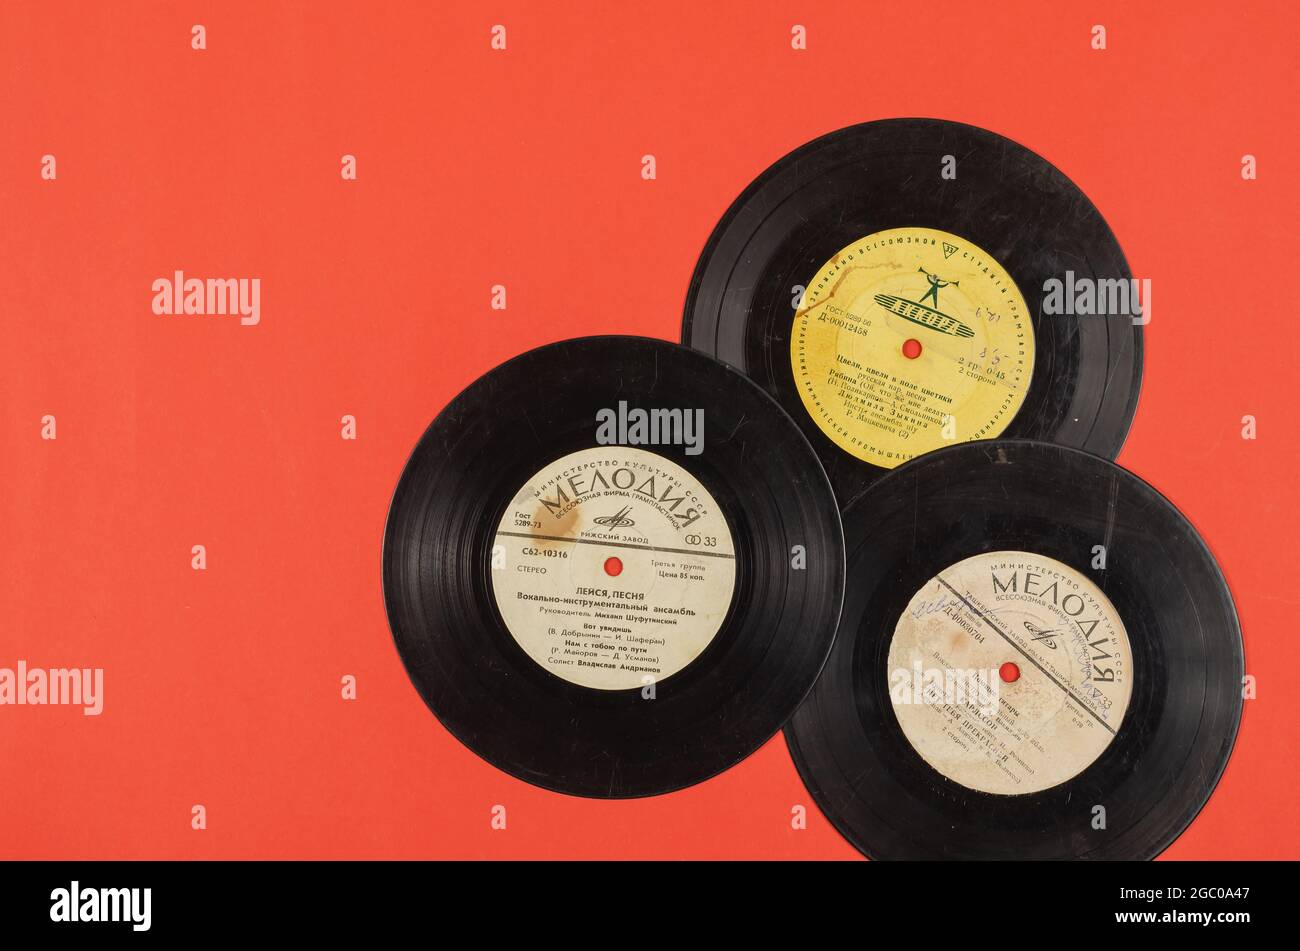 Gramophone Schallplatten aus den 50er, 60er, 70er Jahren auf Rot. Drei  Schallplatten mit sowjetischen Liedern aus der Sowjetzeit. Vintage. Odesa,  Ukraine - 04 27 2021 Stockfotografie - Alamy